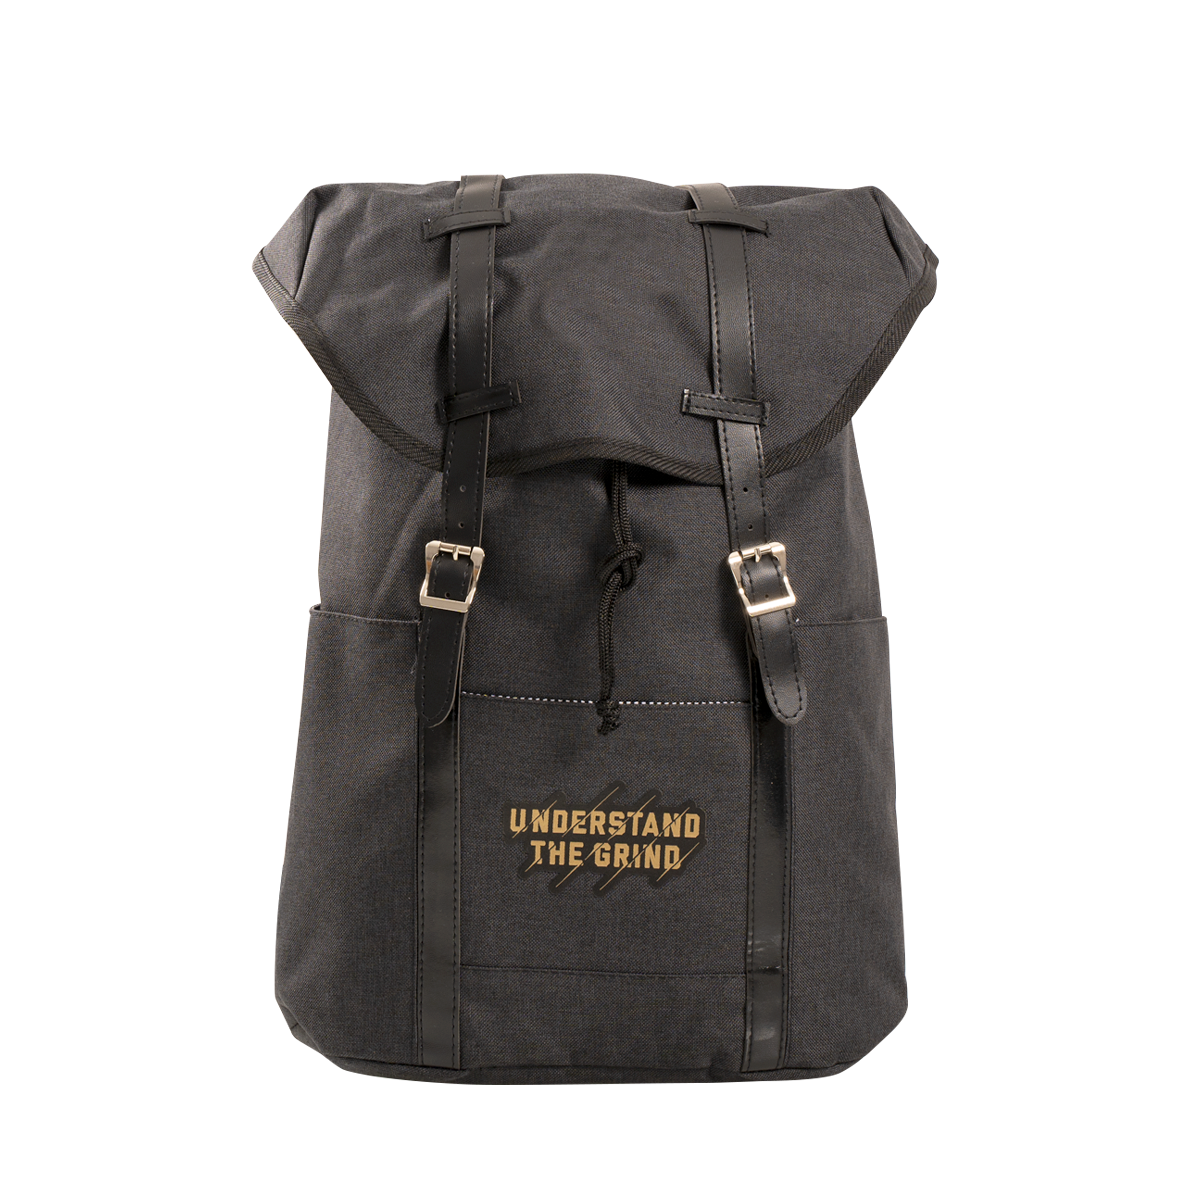 Premium UTG Laptop Backpack